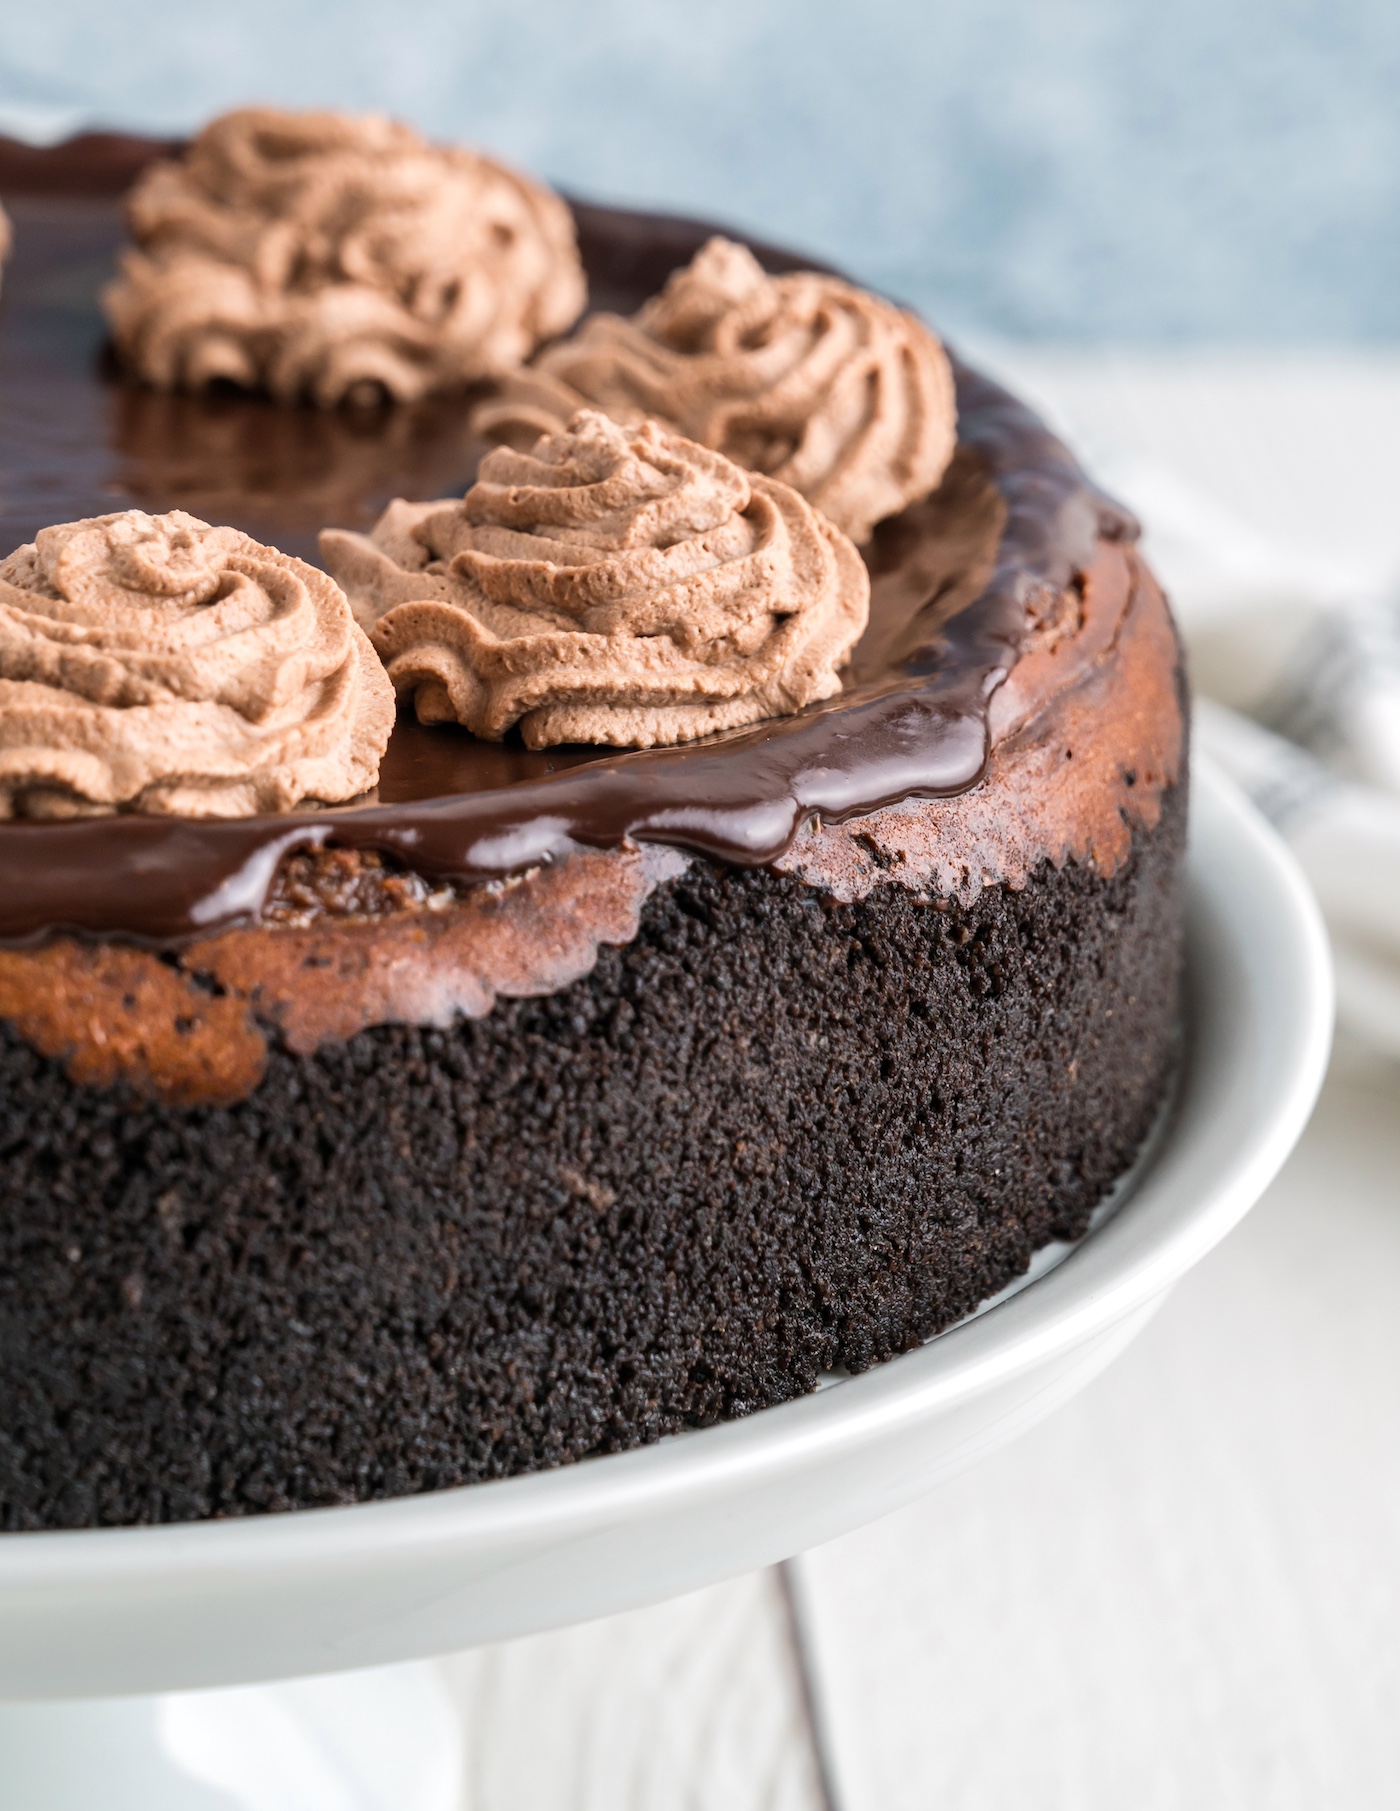 Best Chocolate Cheesecake Recipe